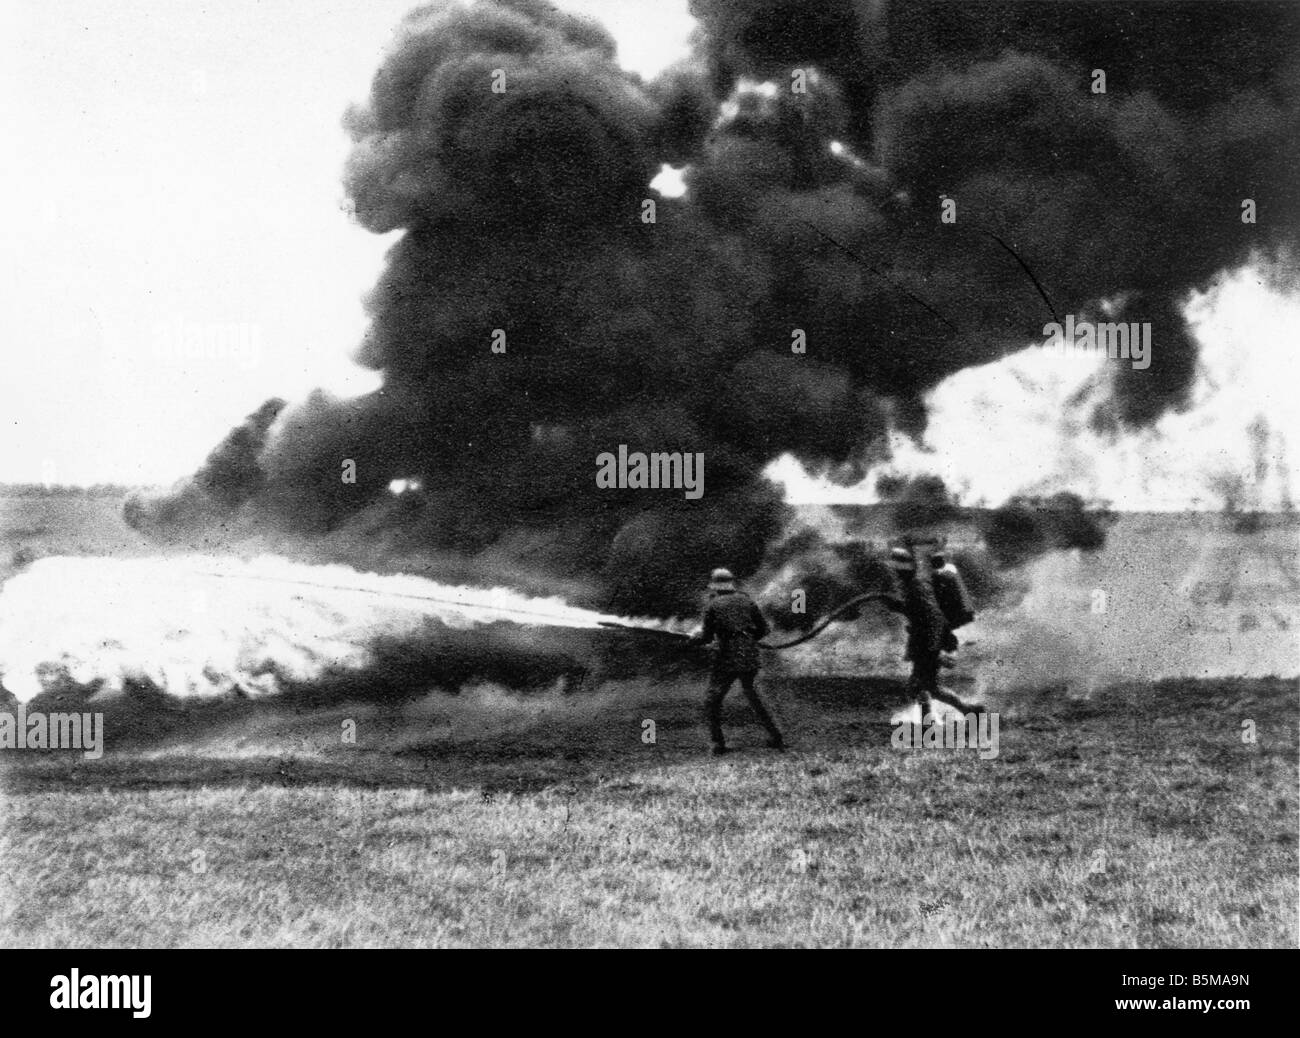 2 G55 W1 1914 4 soldati tedeschi lanciafiamme WWI Storia Prima Guerra Mondiale fronte occidentale soldati tedeschi la distribuzione di una fiamma thrower utilizzare Foto Stock